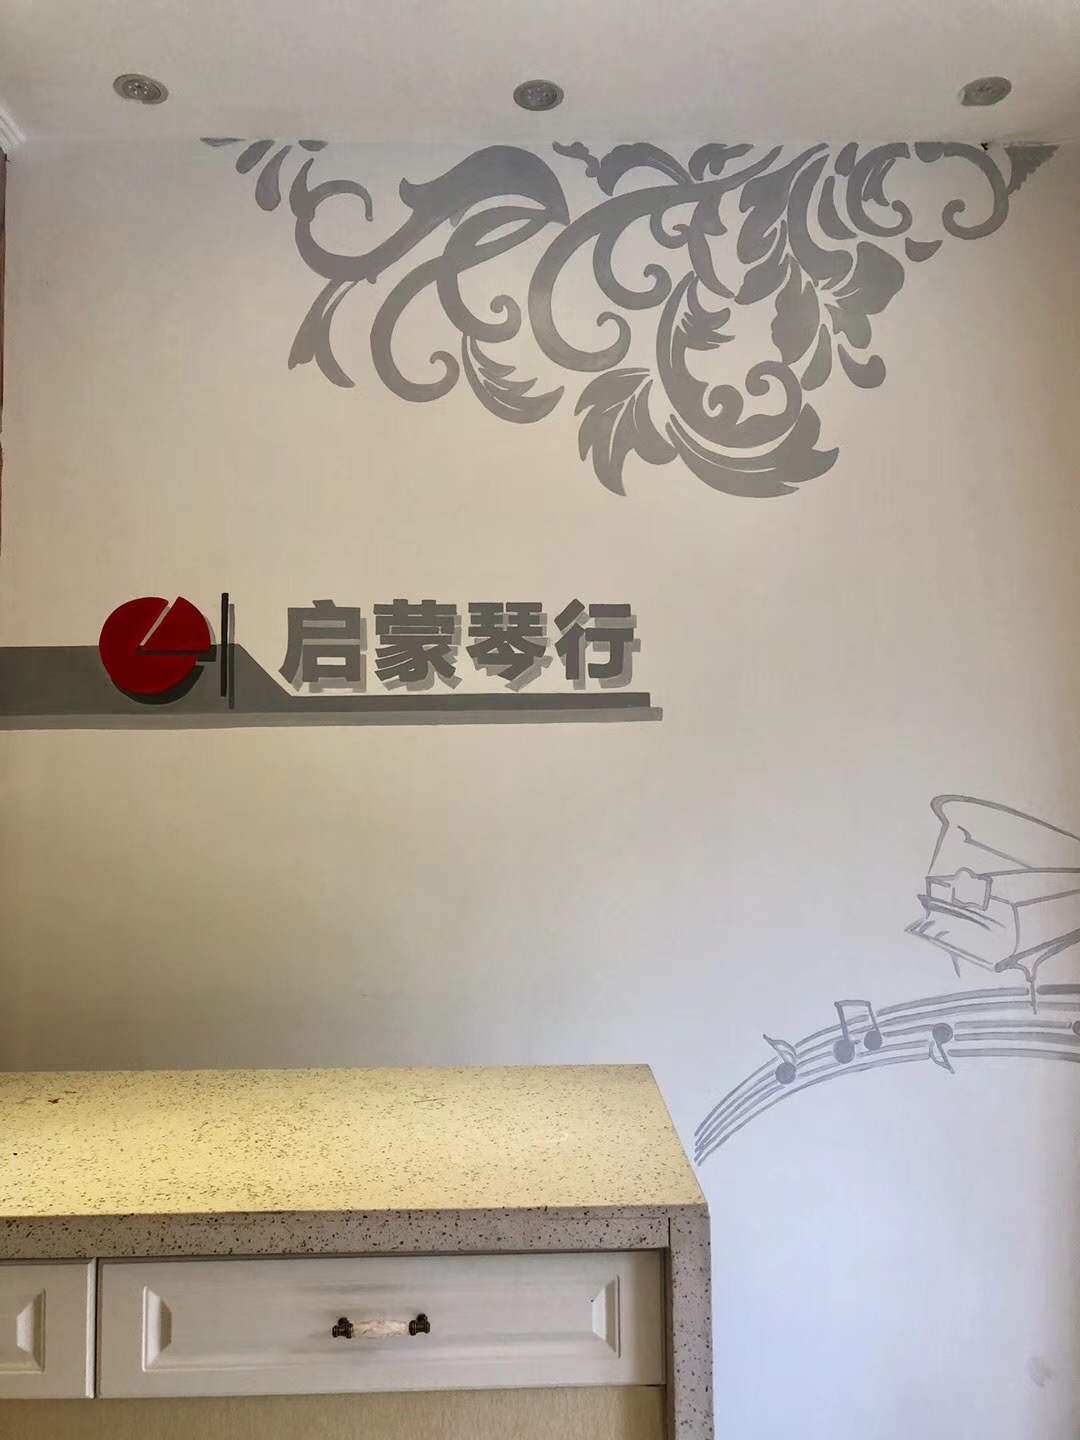 郑州正规墙体彩绘推荐_幼儿园墙体彩绘相关-河南启蒙彩绘艺术有限公司